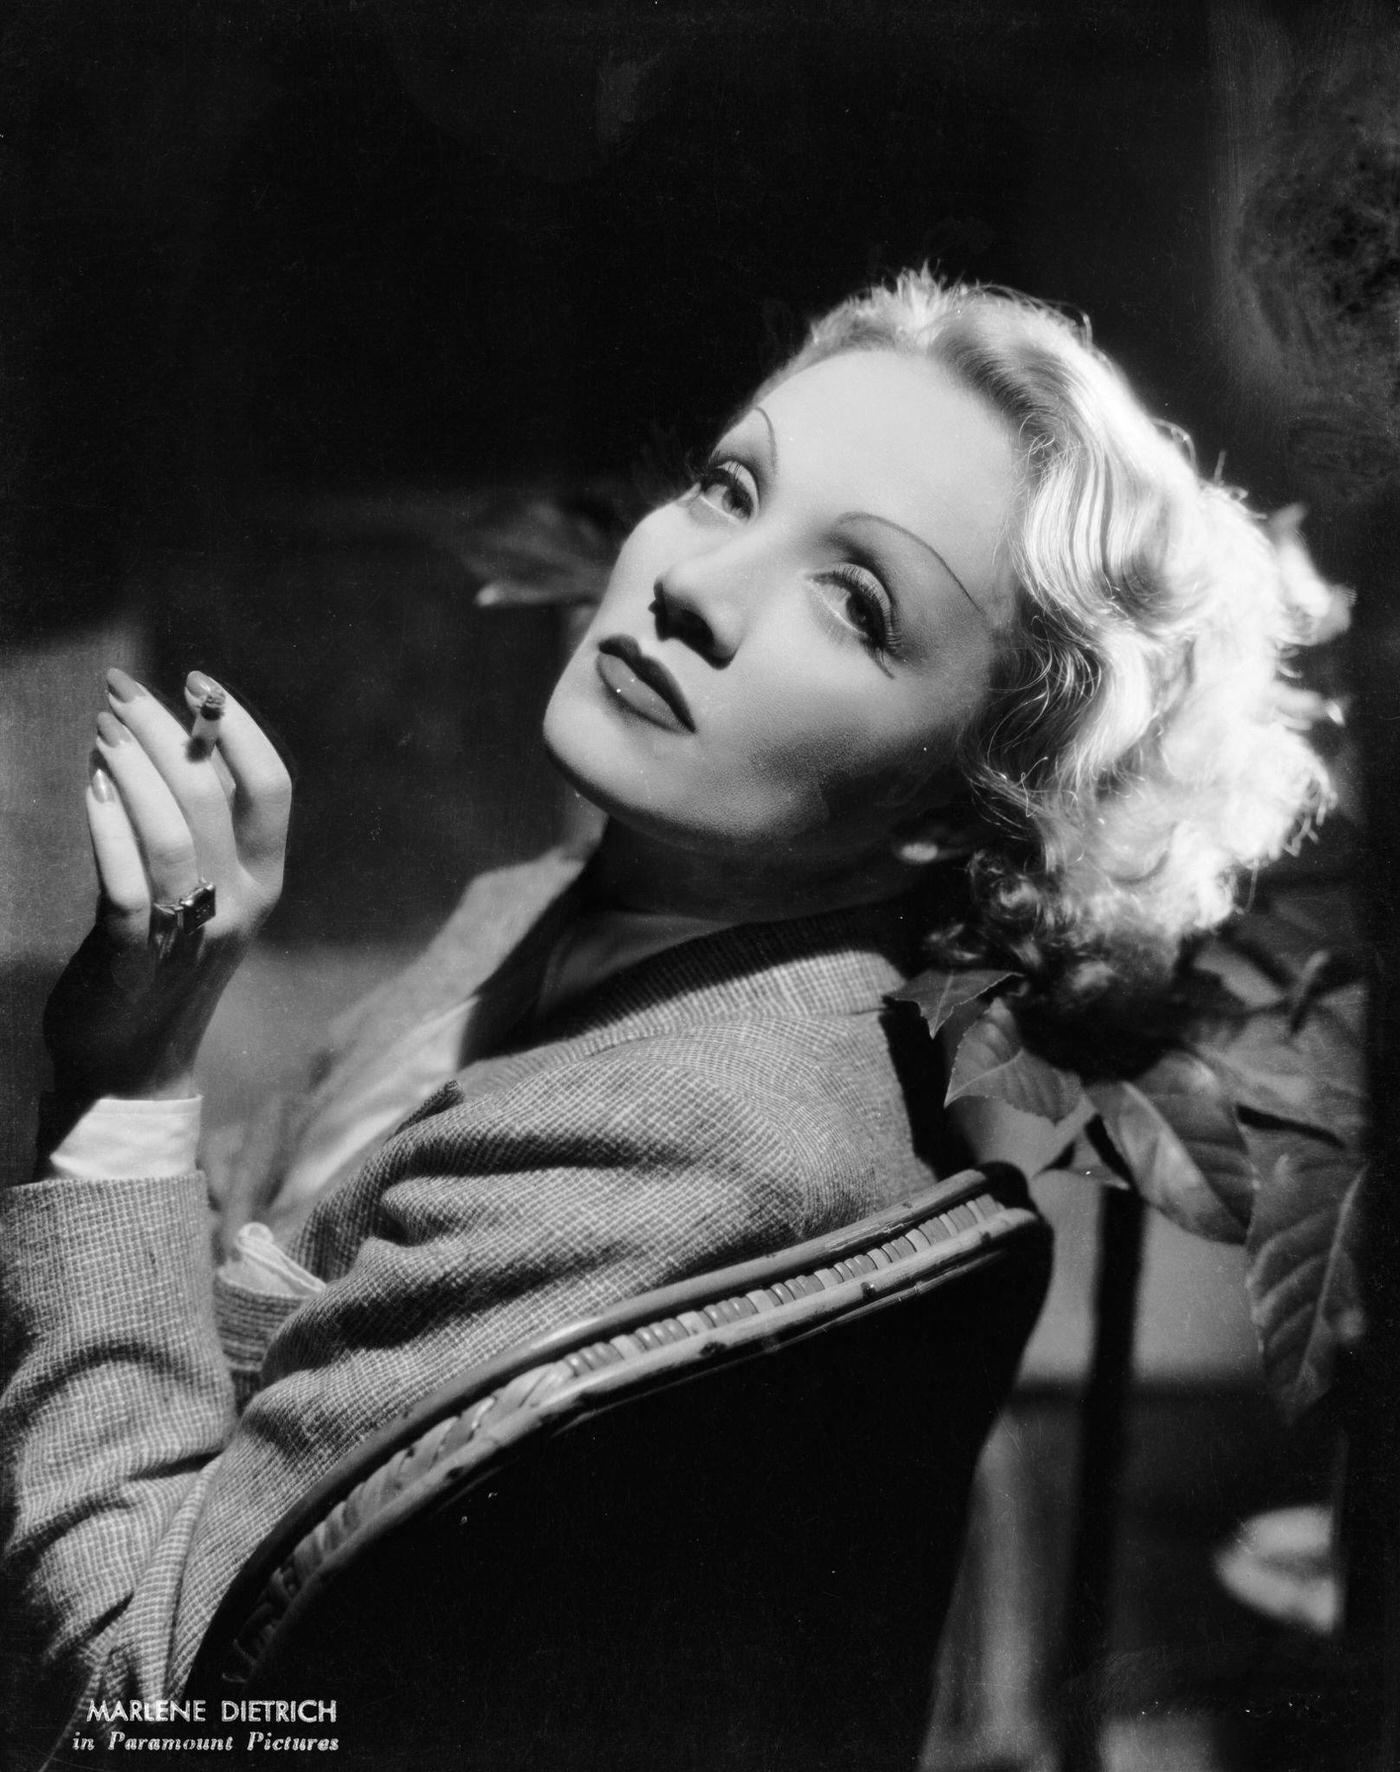 A portrait of Marlene Dietrich taken in 1935.